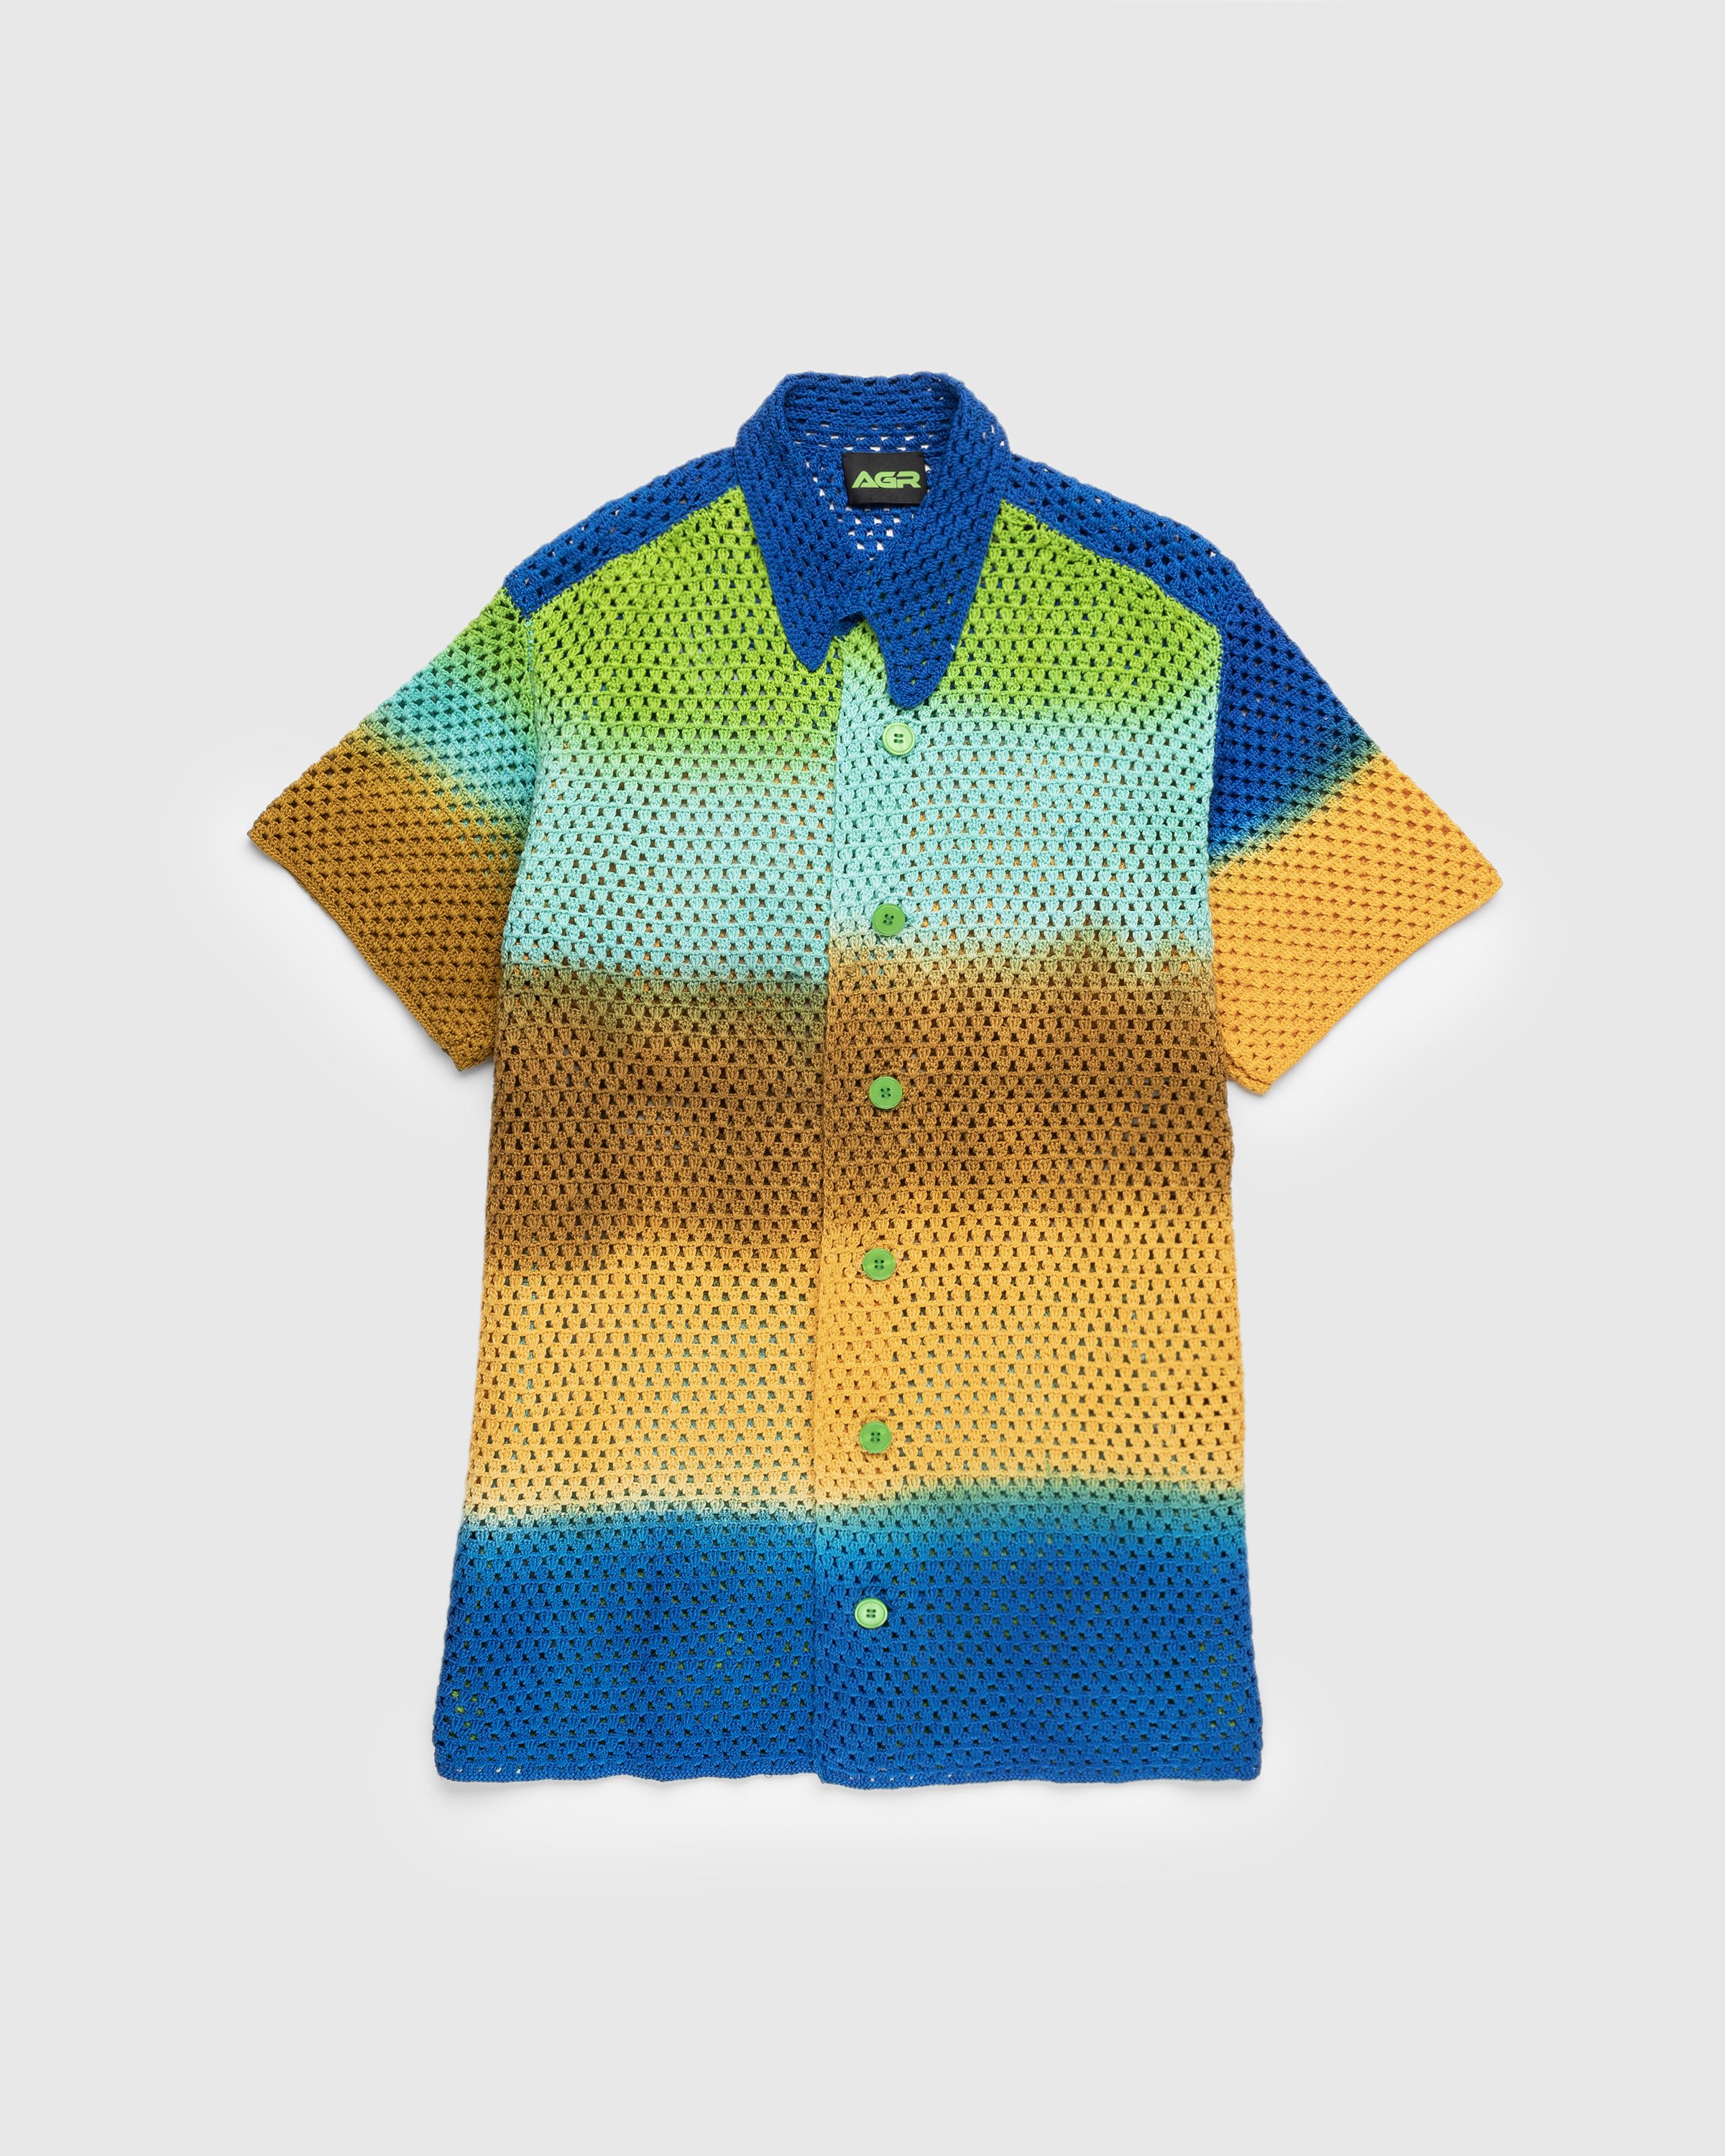 AGR - Wellness Crochet Shirt Multi - Clothing - Multi - Image 1